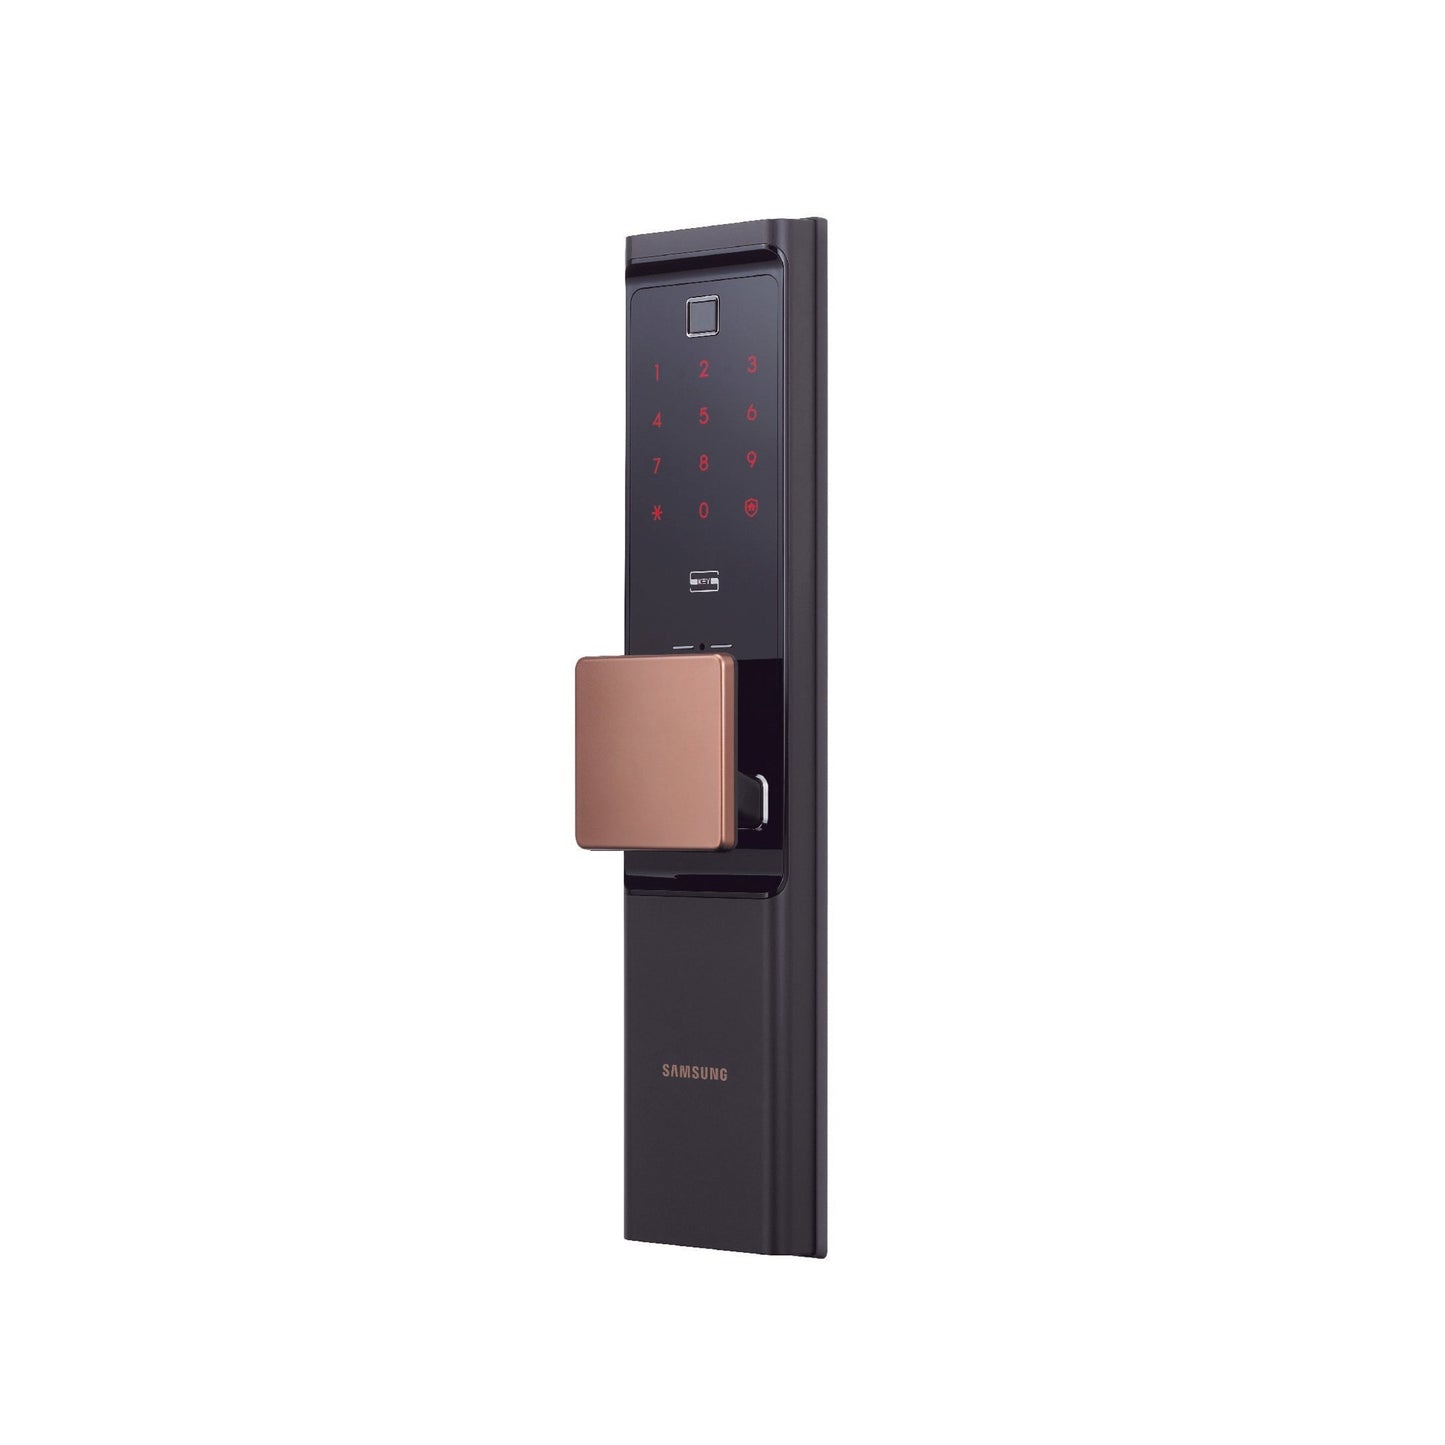 Samsung Smart Door Lock, Model SHP-DR708